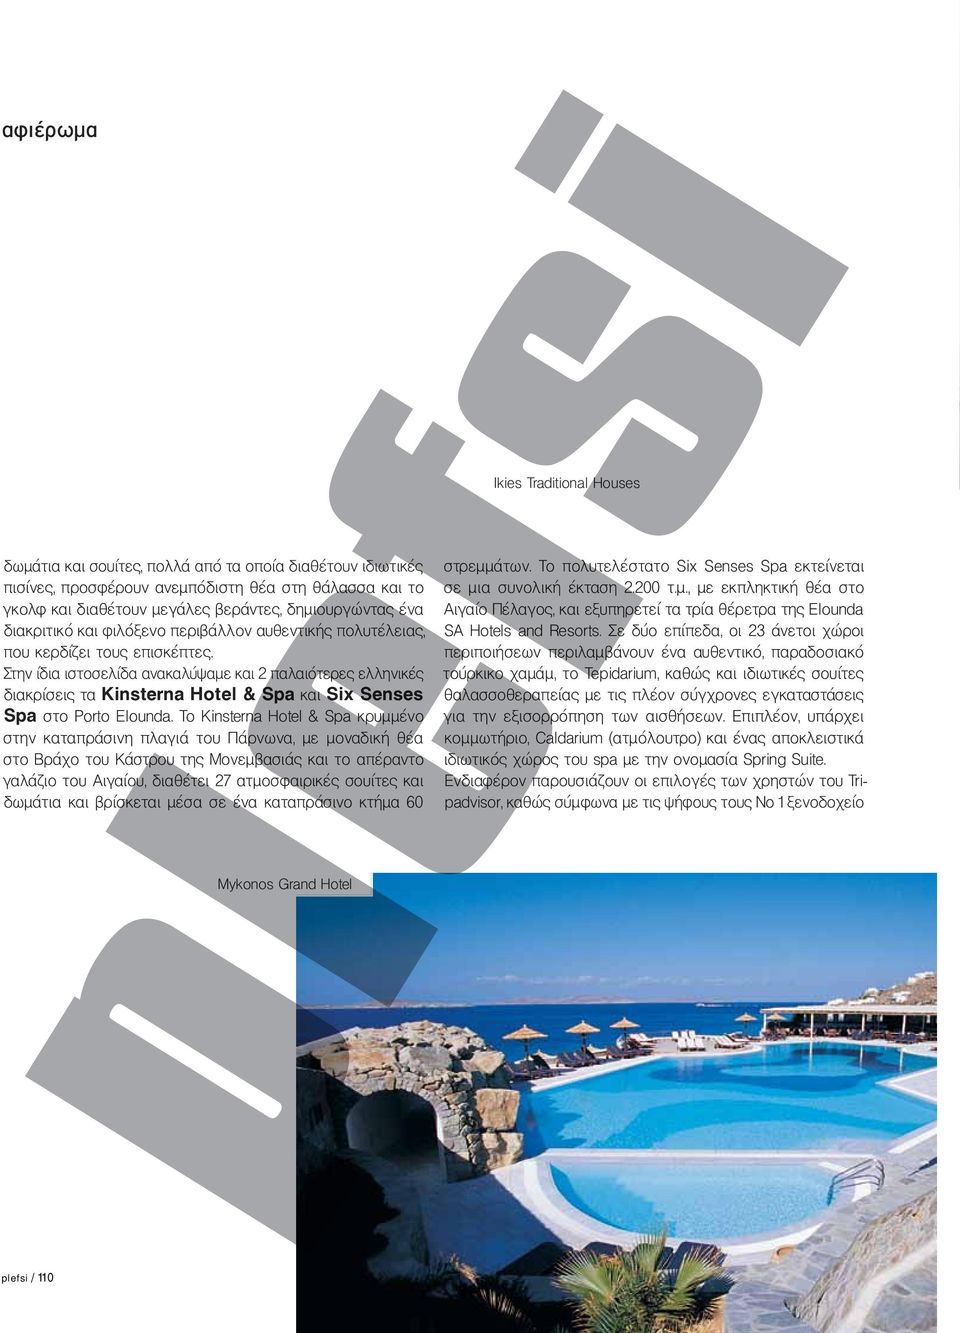 Στην ίδια ιστοσελίδα ανακαλύψαμε και 2 παλαιότερες ελληνικές διακρίσεις τα Kinsterna Hotel & Spa και Six Senses Spa στο Porto Elounda.